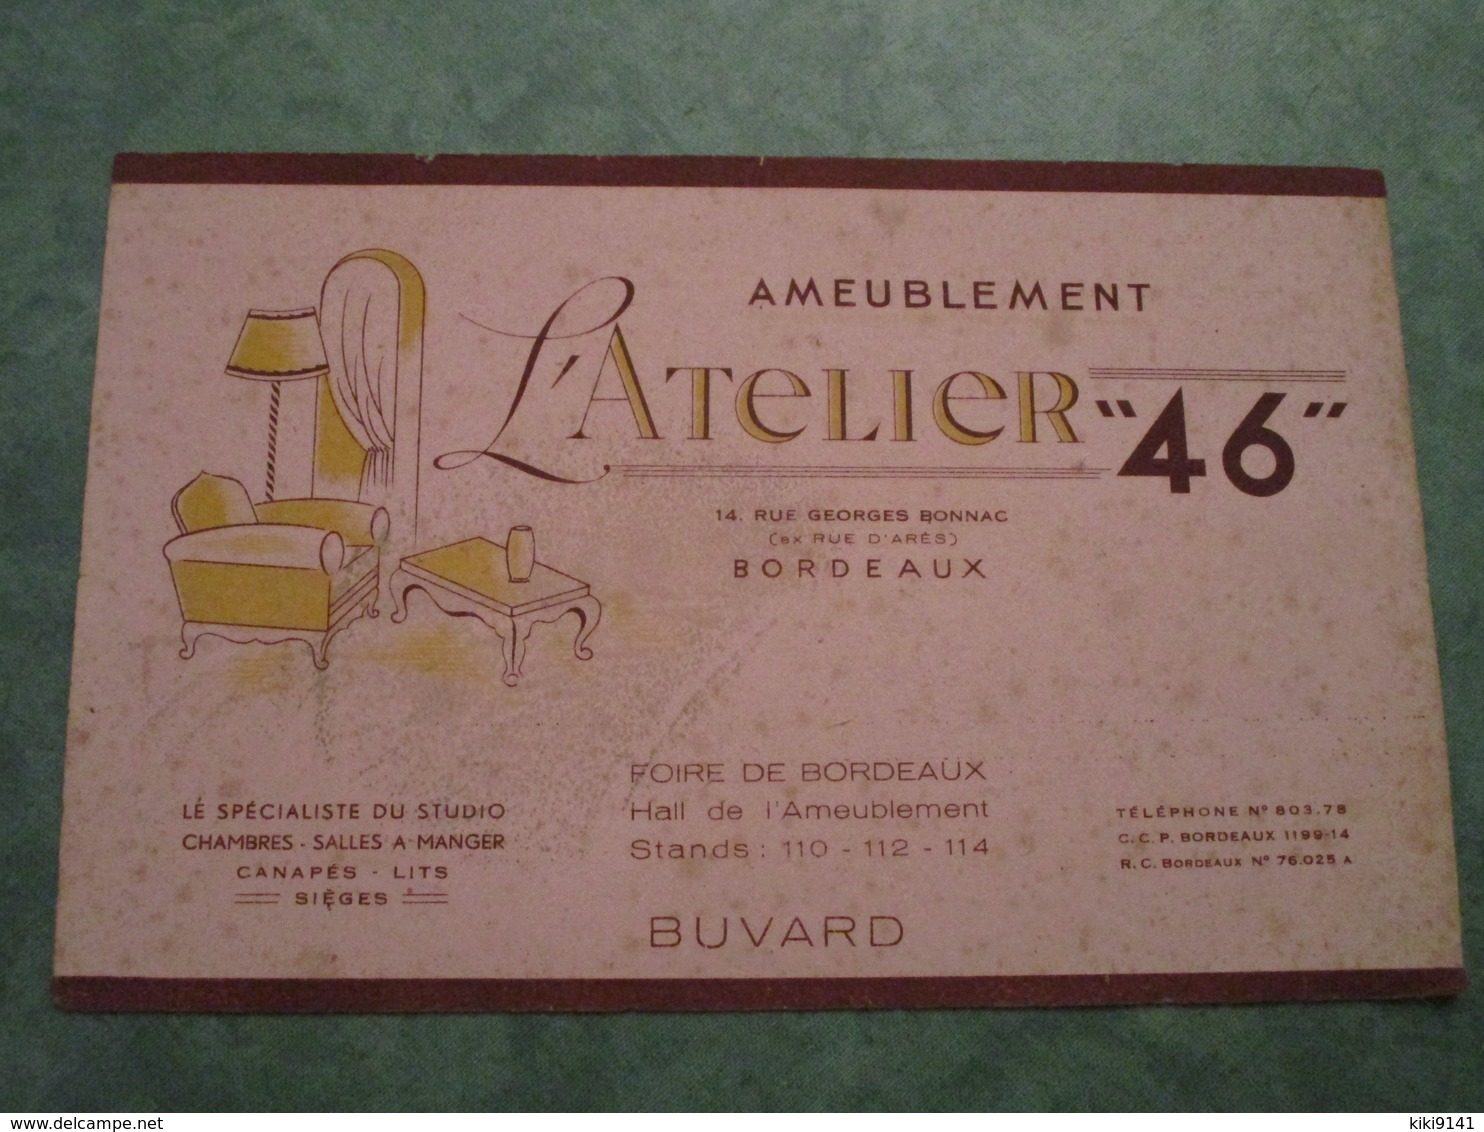 Ameublement L'ATELIER "46" - 14, Rue Georges Bonnac à BORDEAUX - A